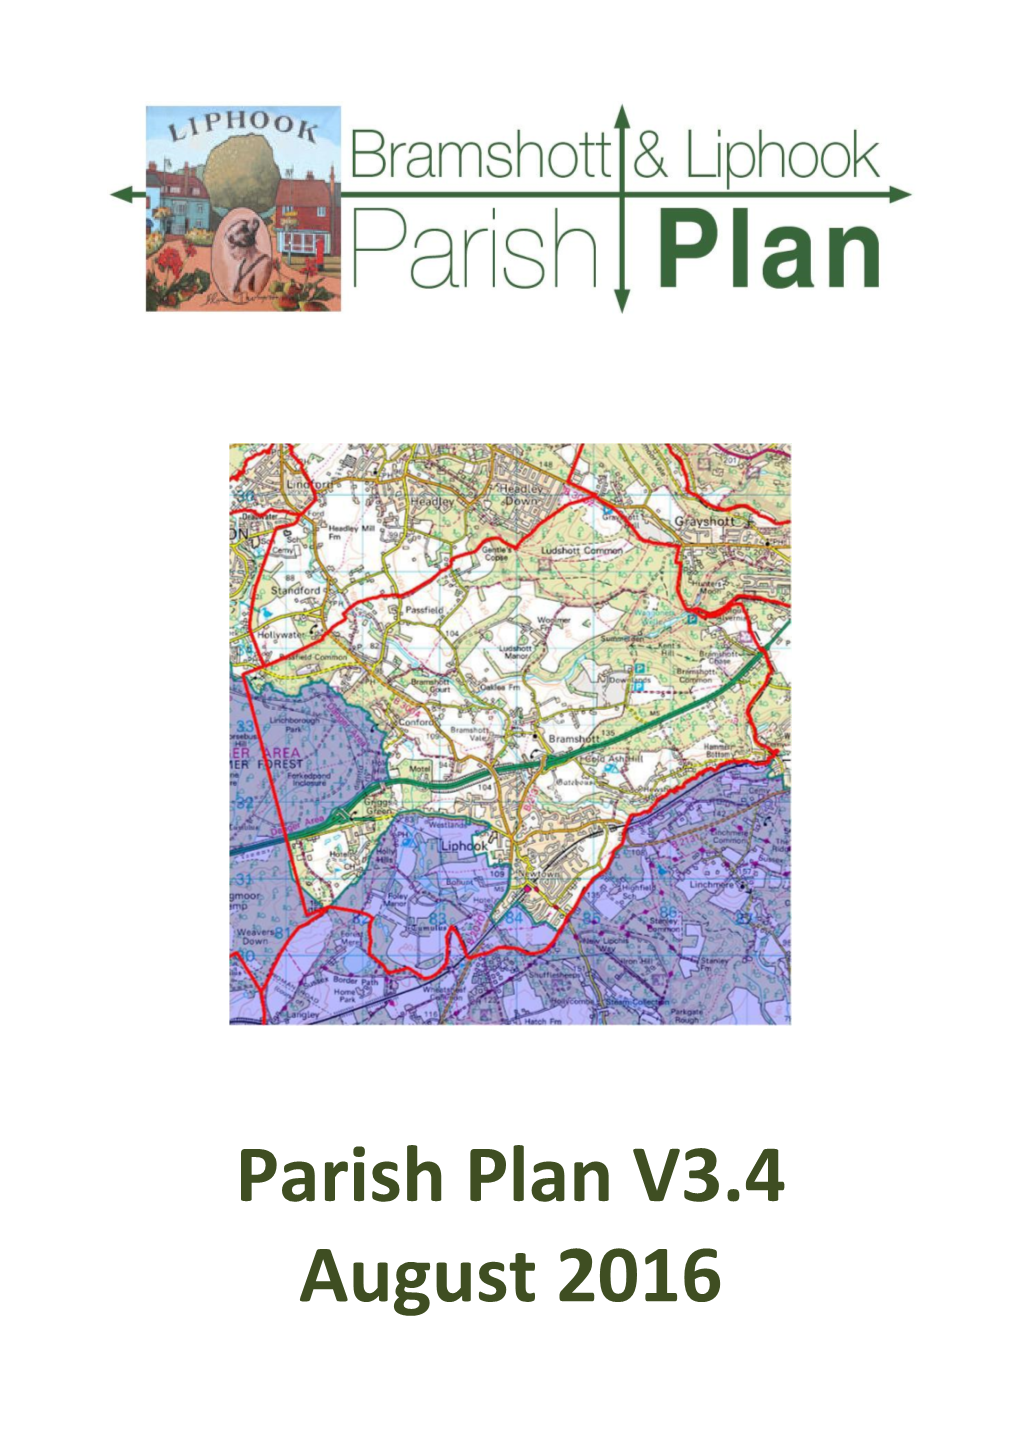 Parish Plan V3.4 August 2016